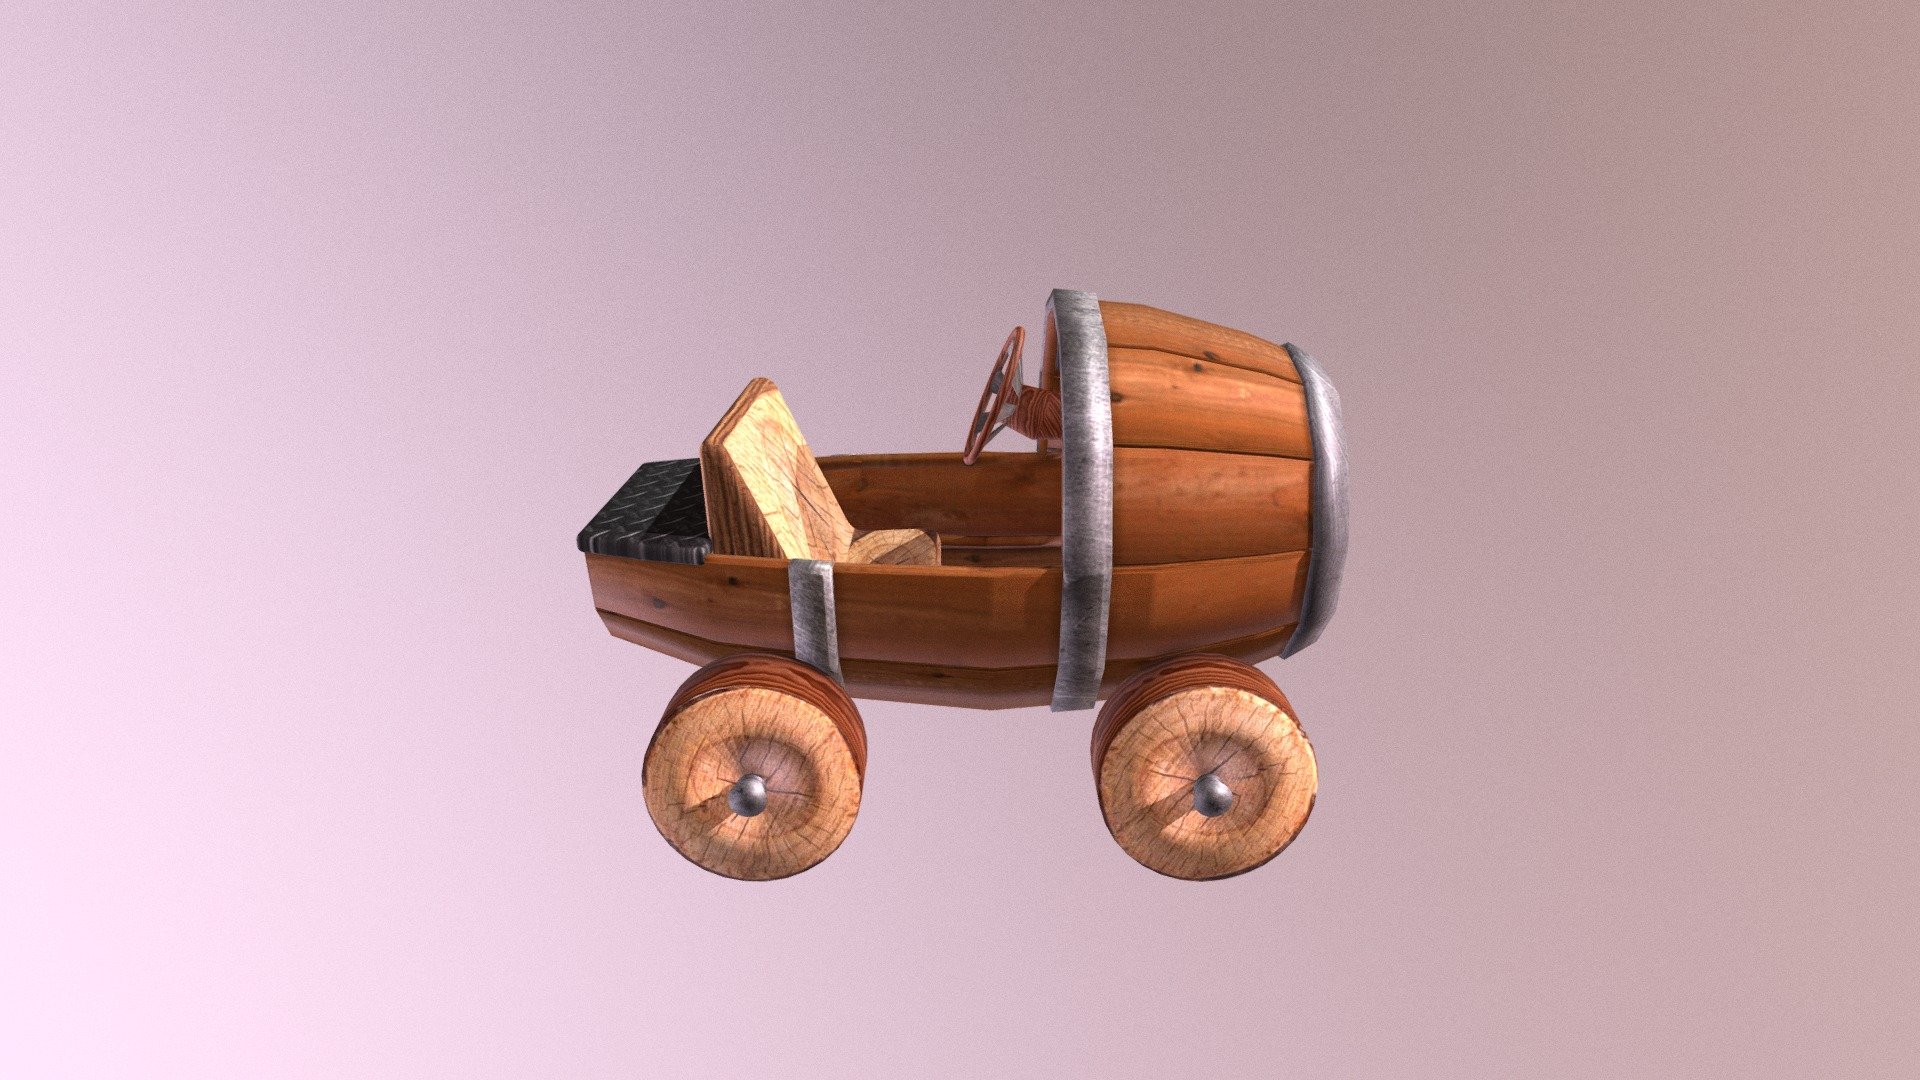 Coche barril inspirado en el tronco movil de mario kart double dash - Barril - 3D model by Jaime Barrera (@ThejaimeleRDF) 3d model